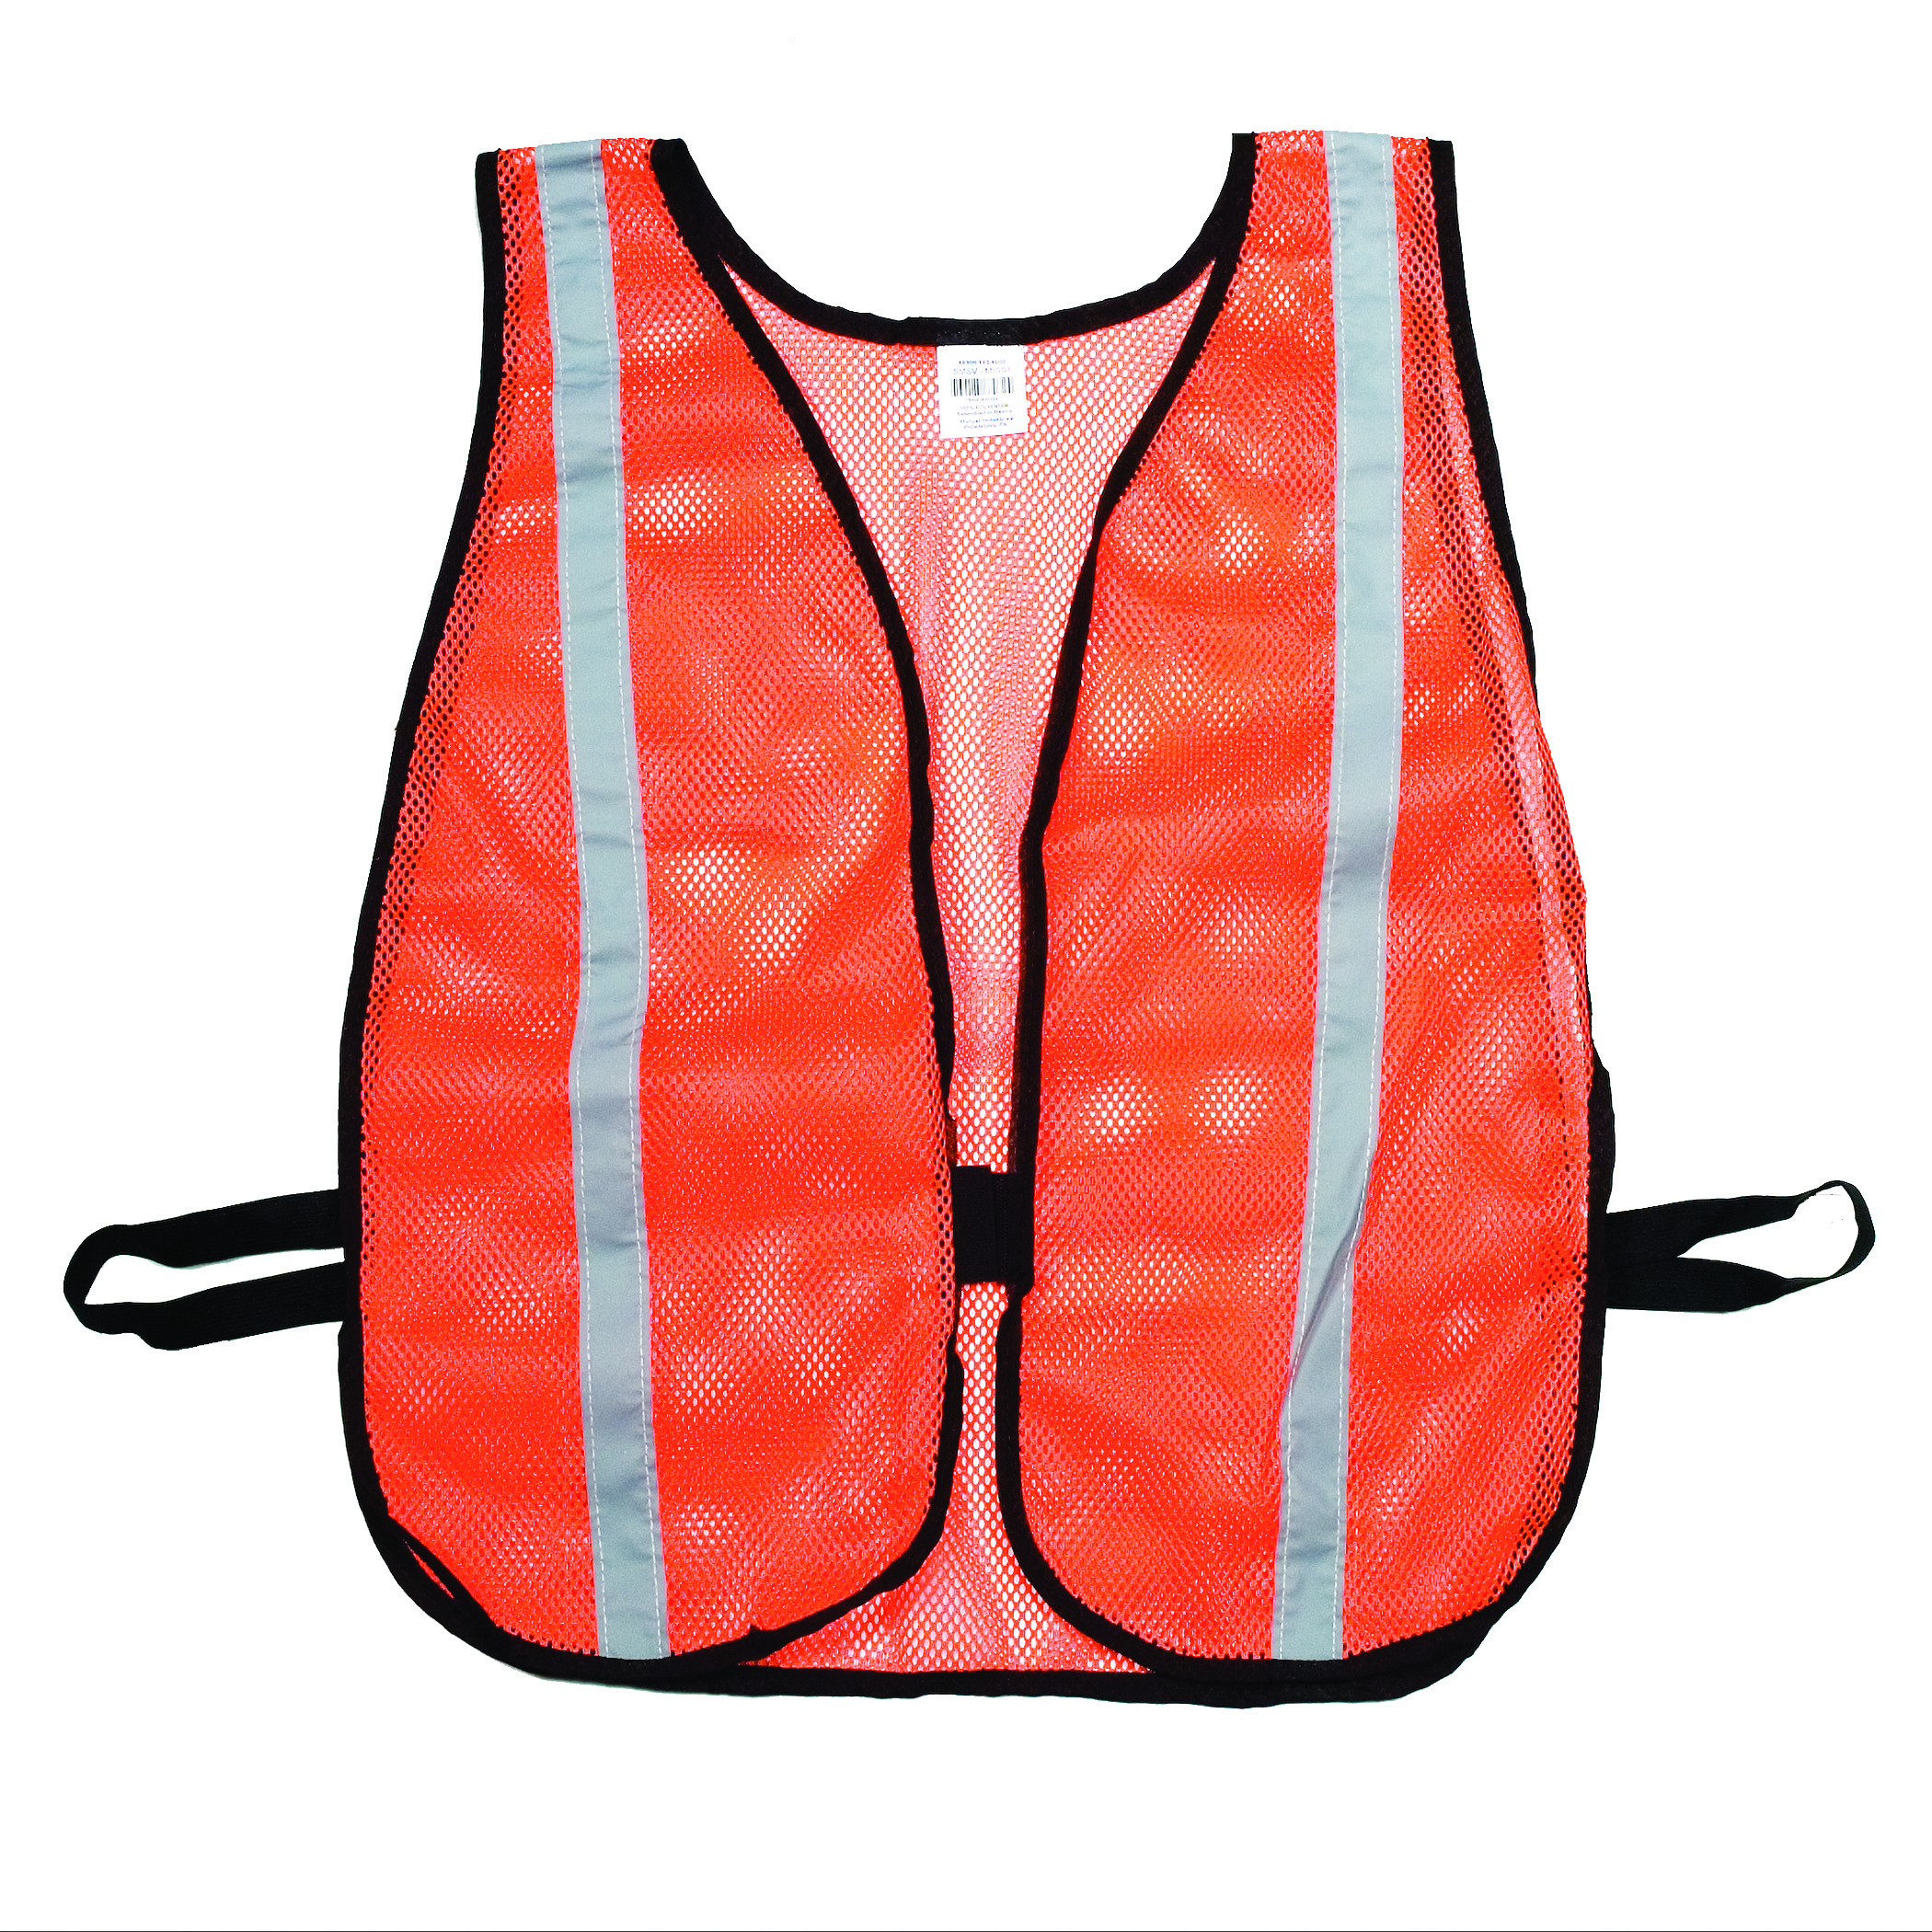 16300-53-1000, Orange Soft Mesh Safety Vest - 1 Silver Reflective, Flagging Direct